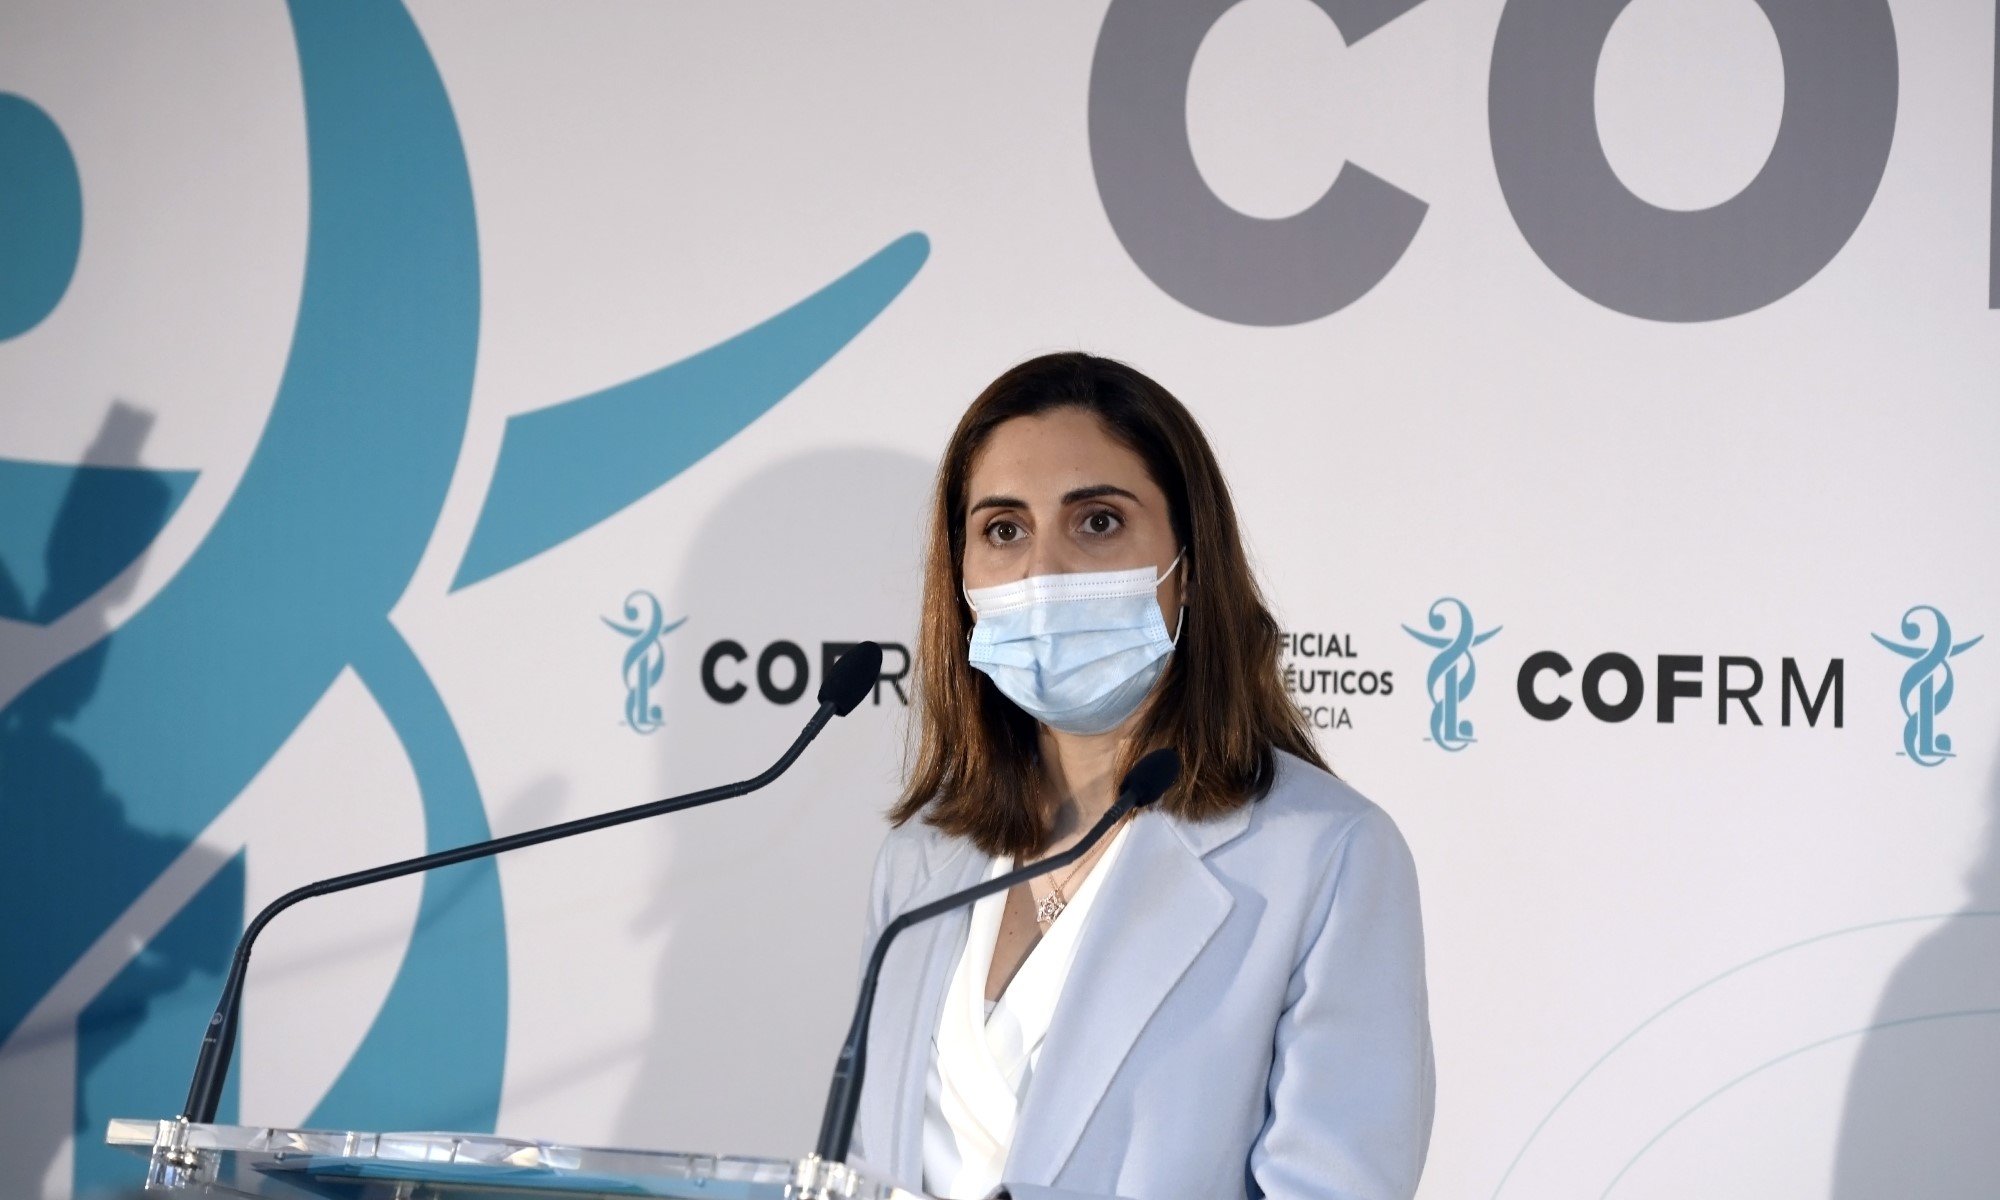 La presidenta del COFRM destaca “el compromiso y el esfuerzo” de los farmacéuticos durante la pandemia, ante el Día Mundial de la Salud